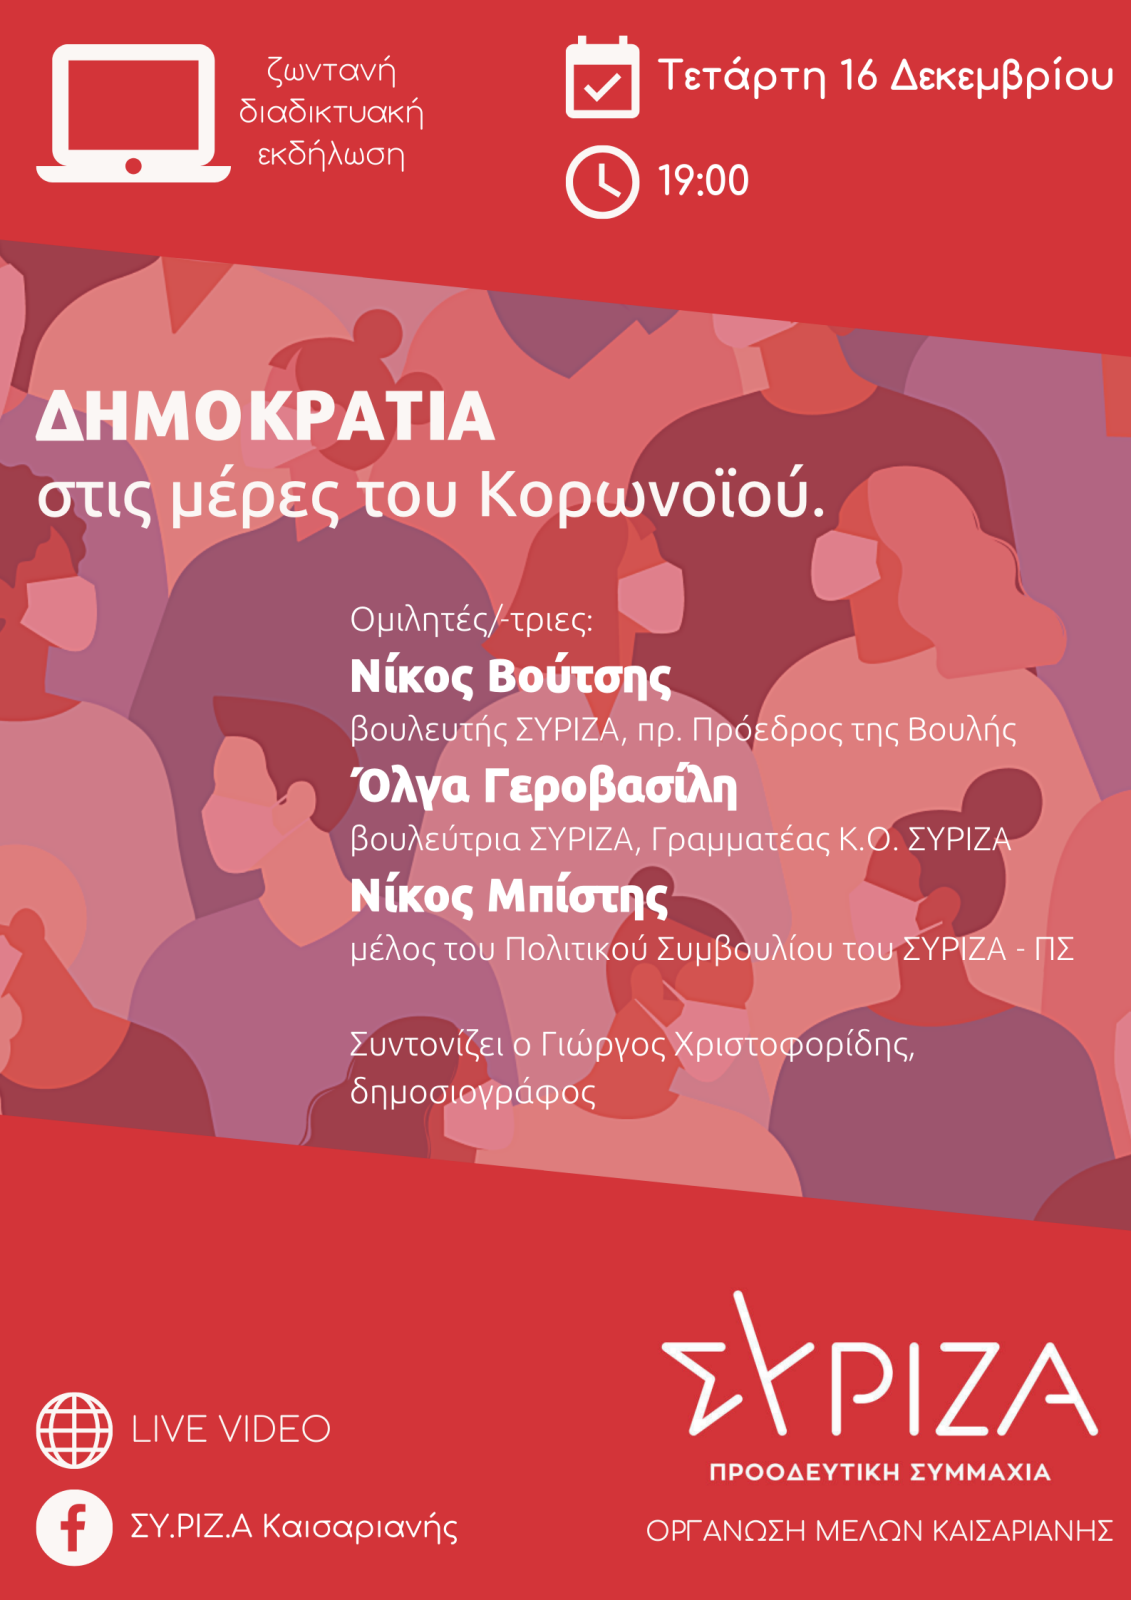 Ζωντανή Διαδικτυακή Εκδήλωση της Ο.Μ. ΣΥΡΙΖΑ – Προοδευτική Συμμαχία Καισαριανής με θέμα: Δημοκρατία στις μέρες του κορωνοϊού